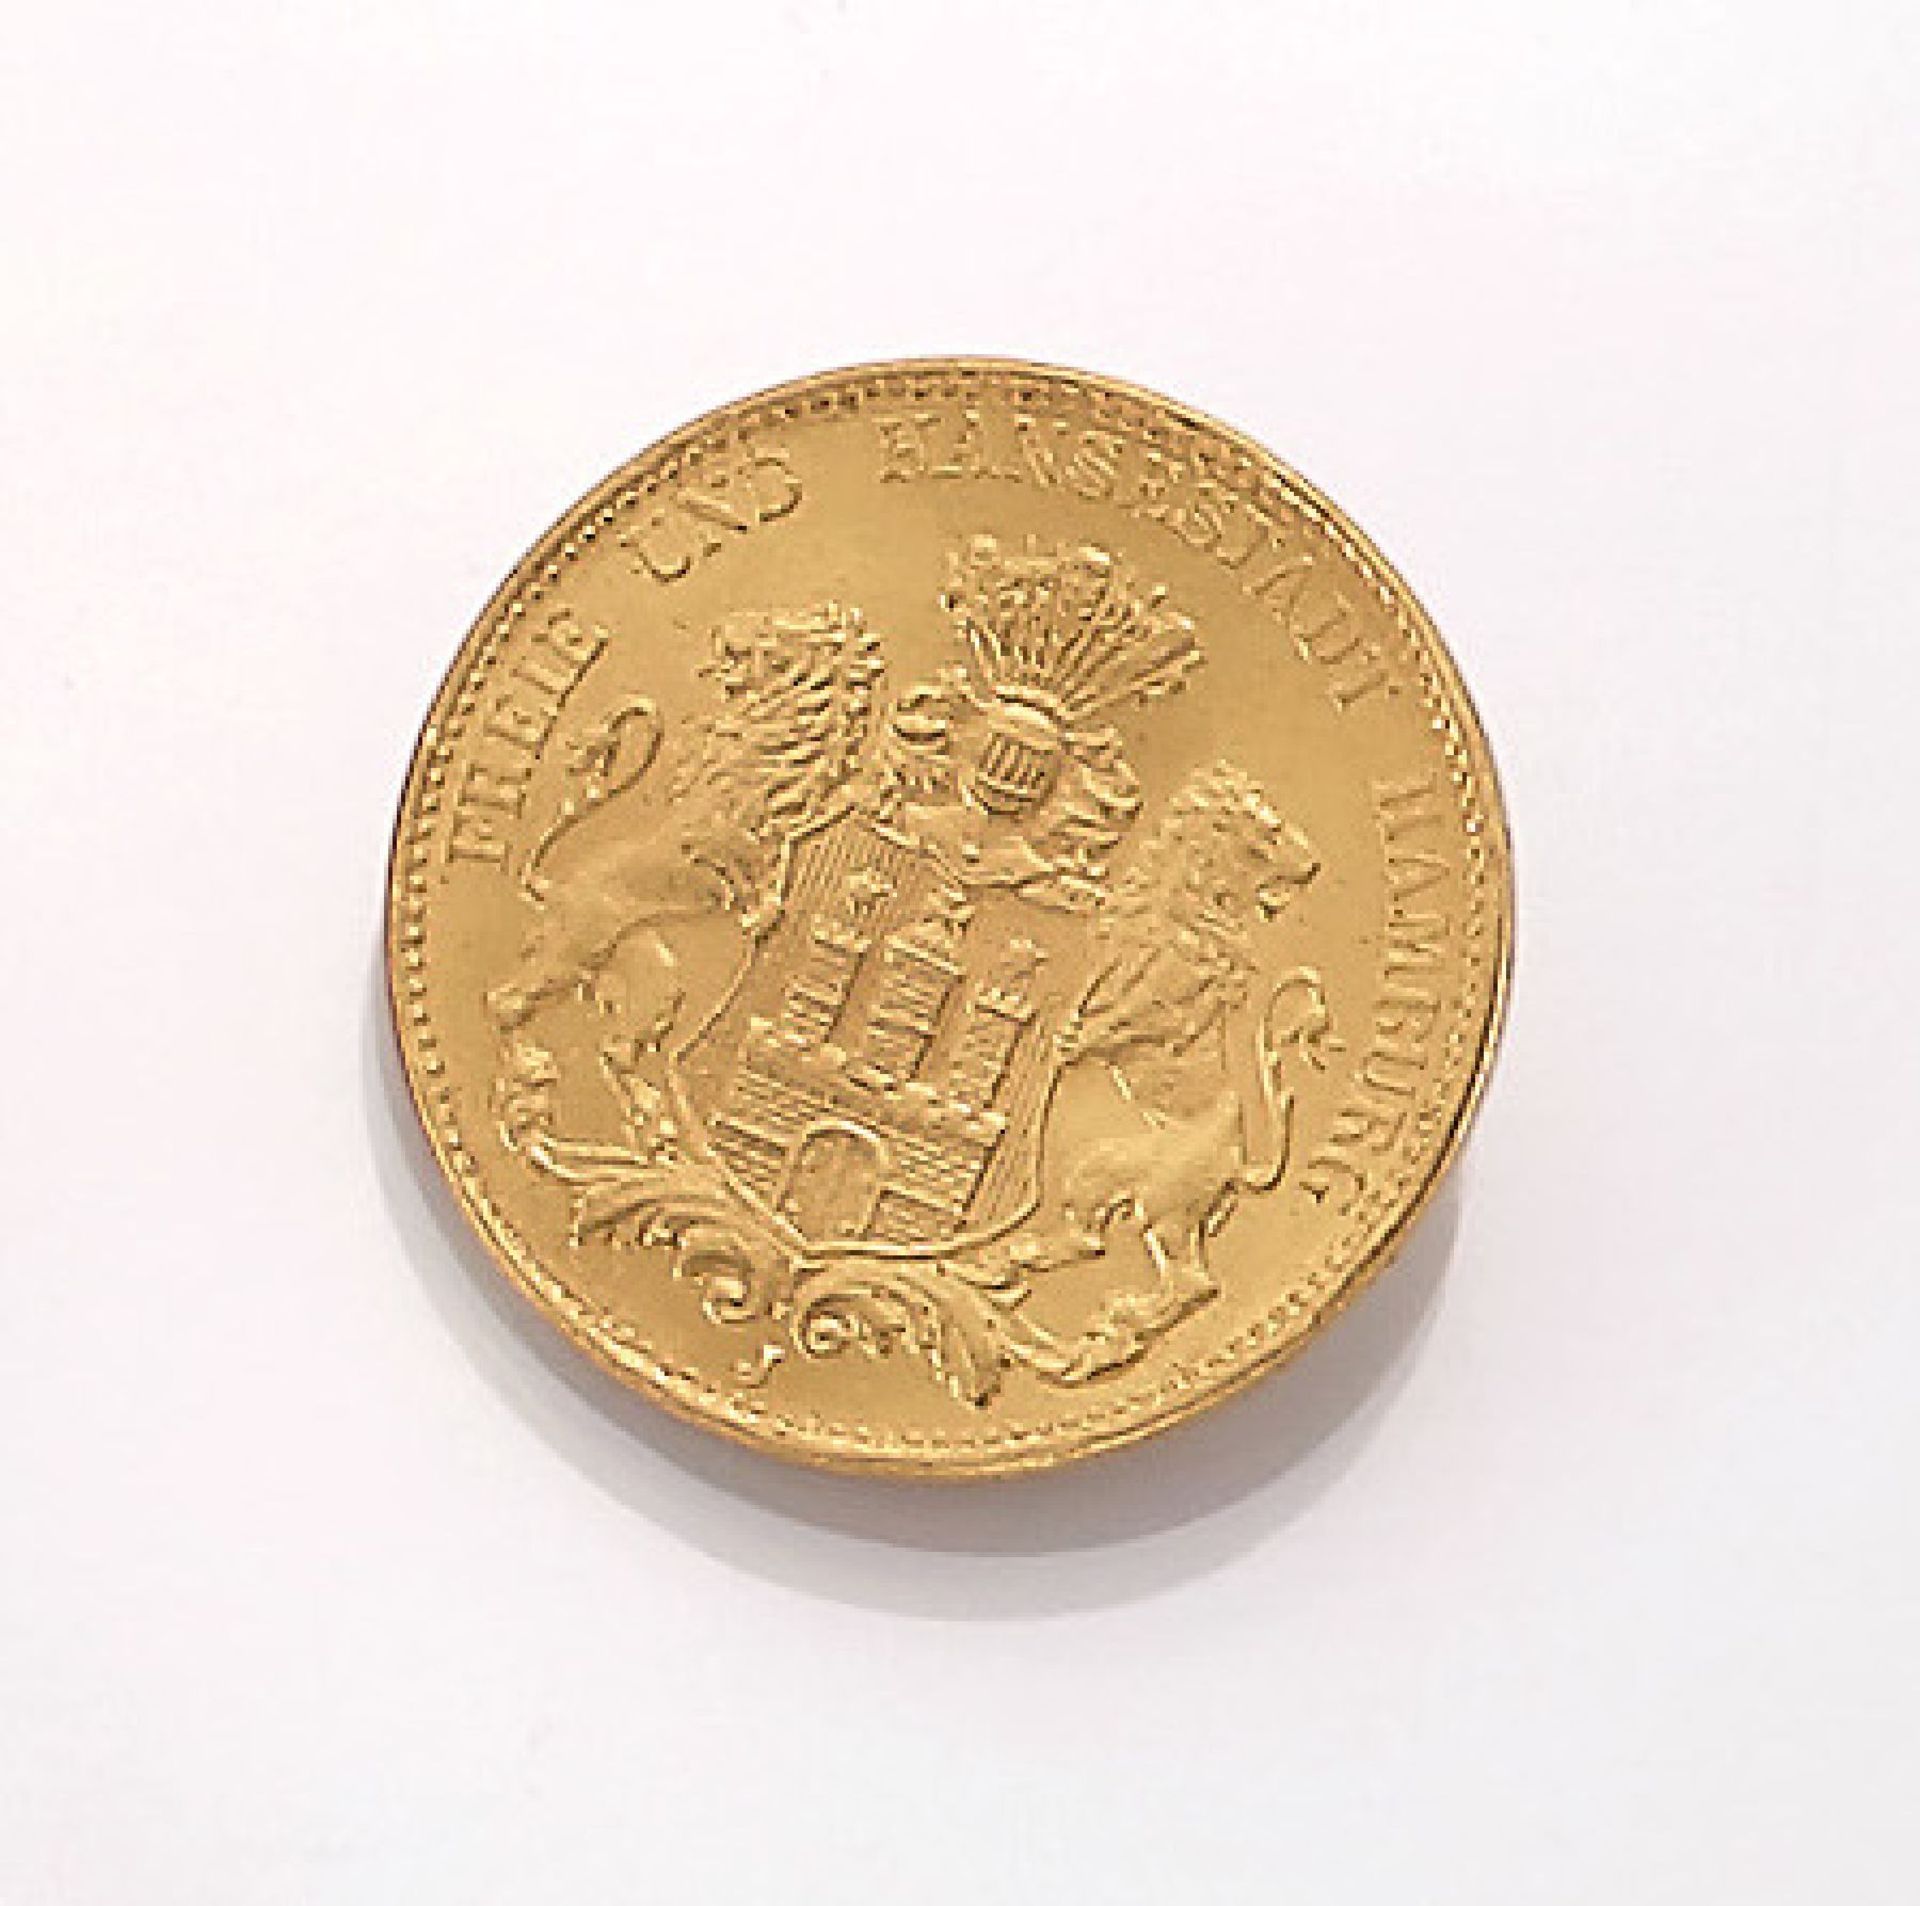 Goldmünze, 20 Mark, Deutsches Reich, 1912, Freie und Hansestadt Hamburg, Prägeort JGold coin, 20